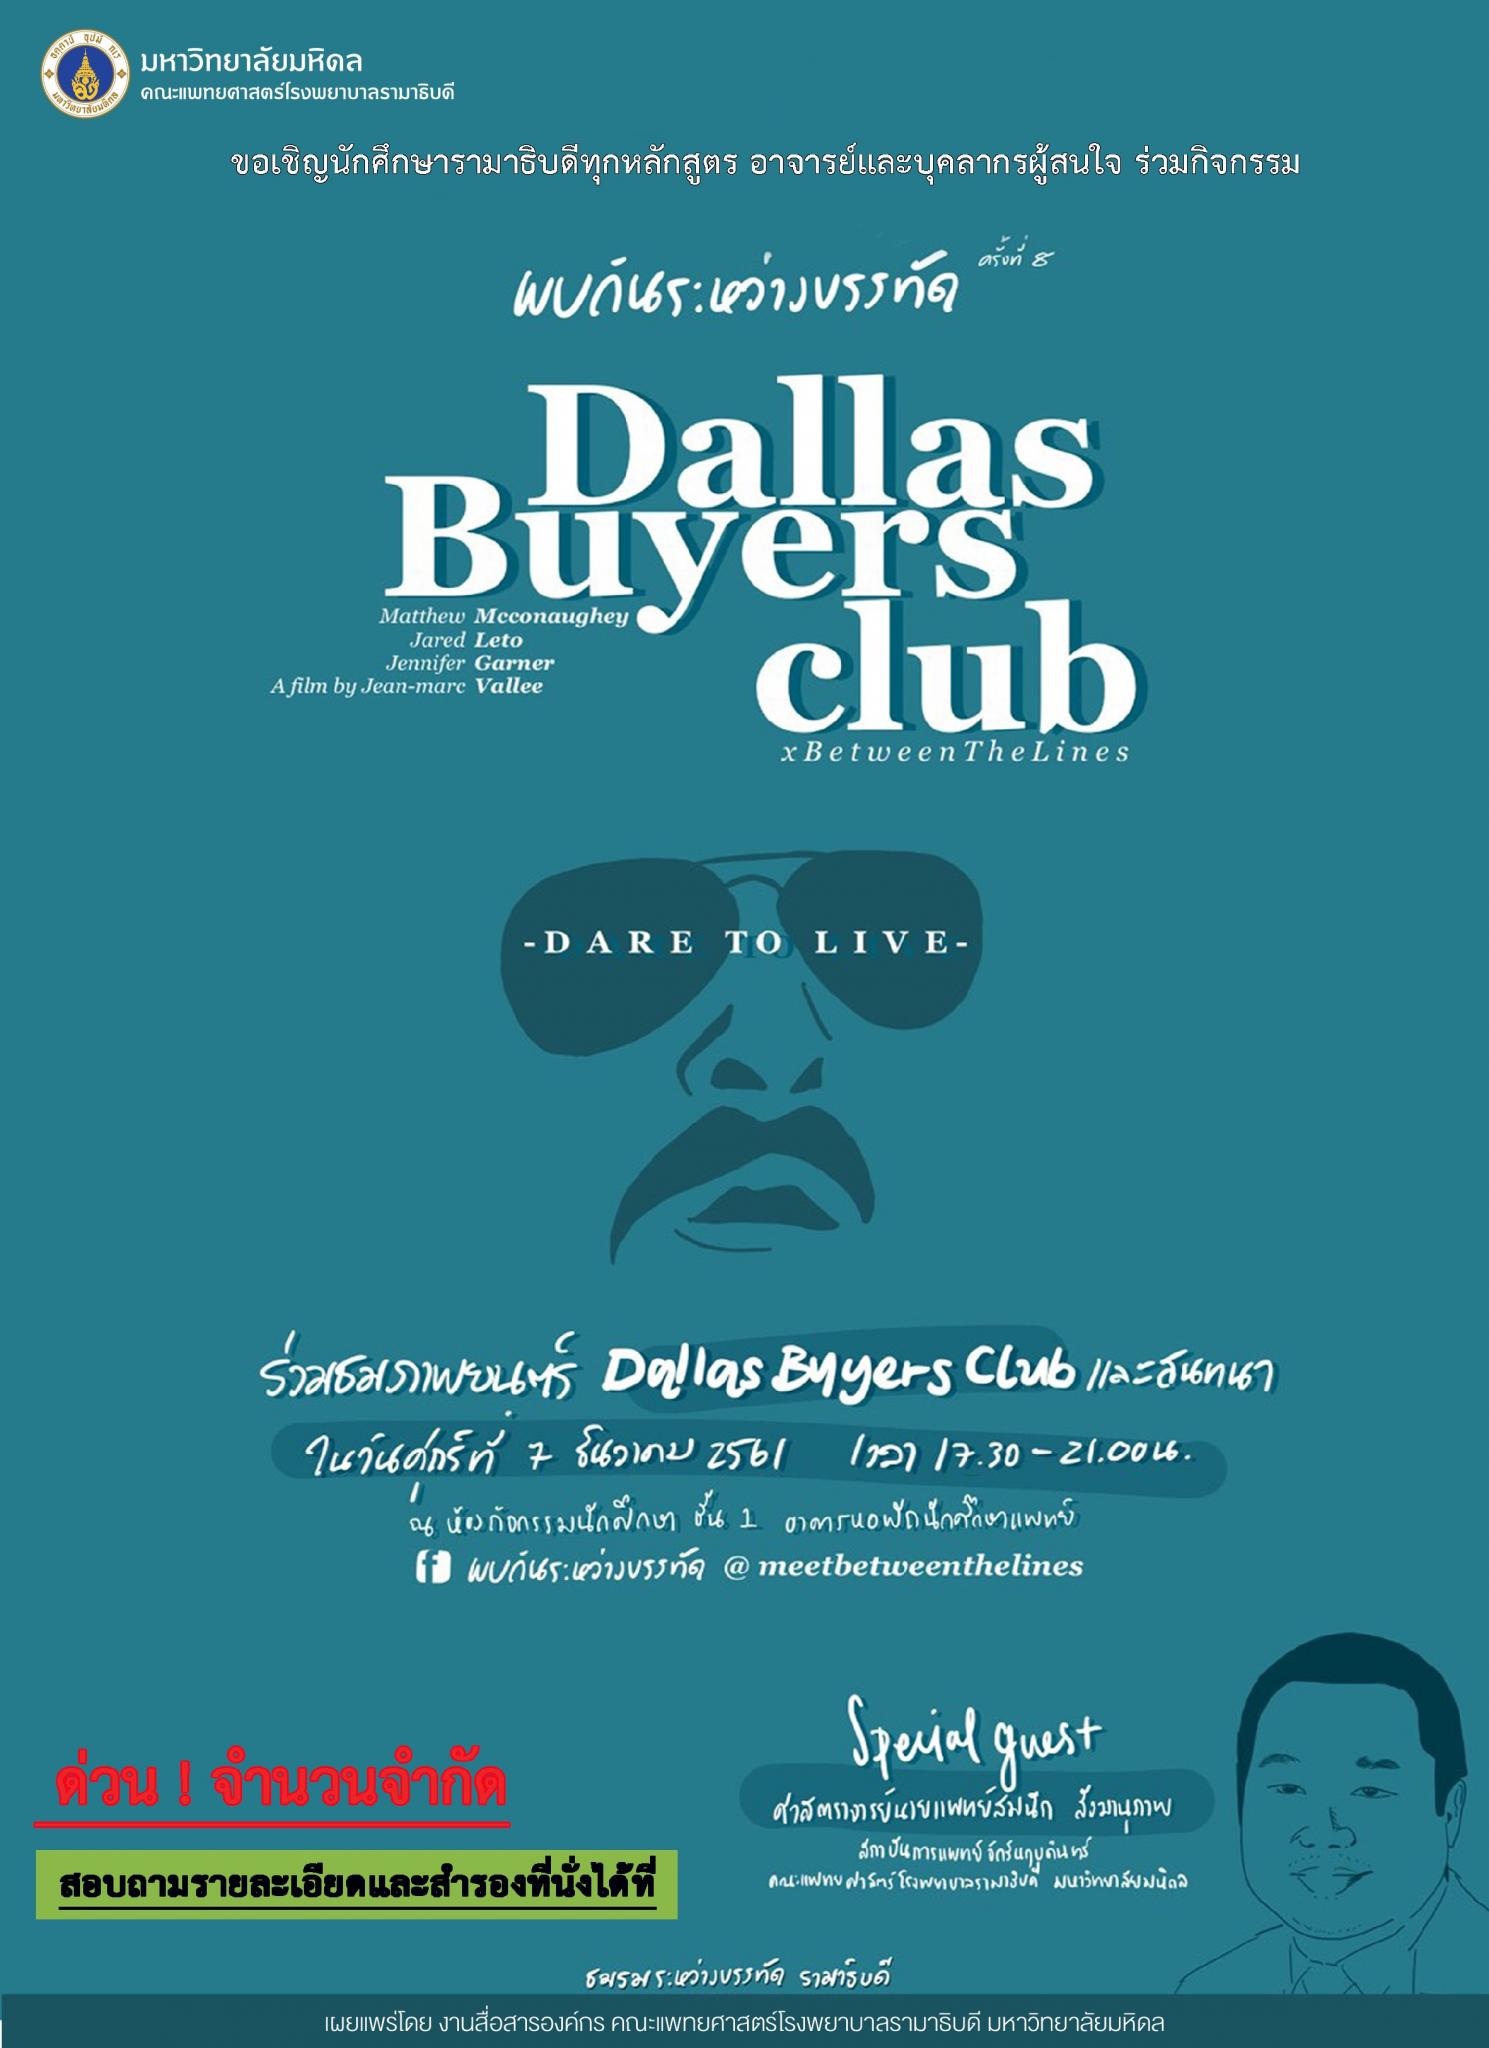 ขอเชิญร่วมกิจกรรม พบกันระหว่างบรรทัด ครั้งที่ 8 ตอน Dallas Buyers club